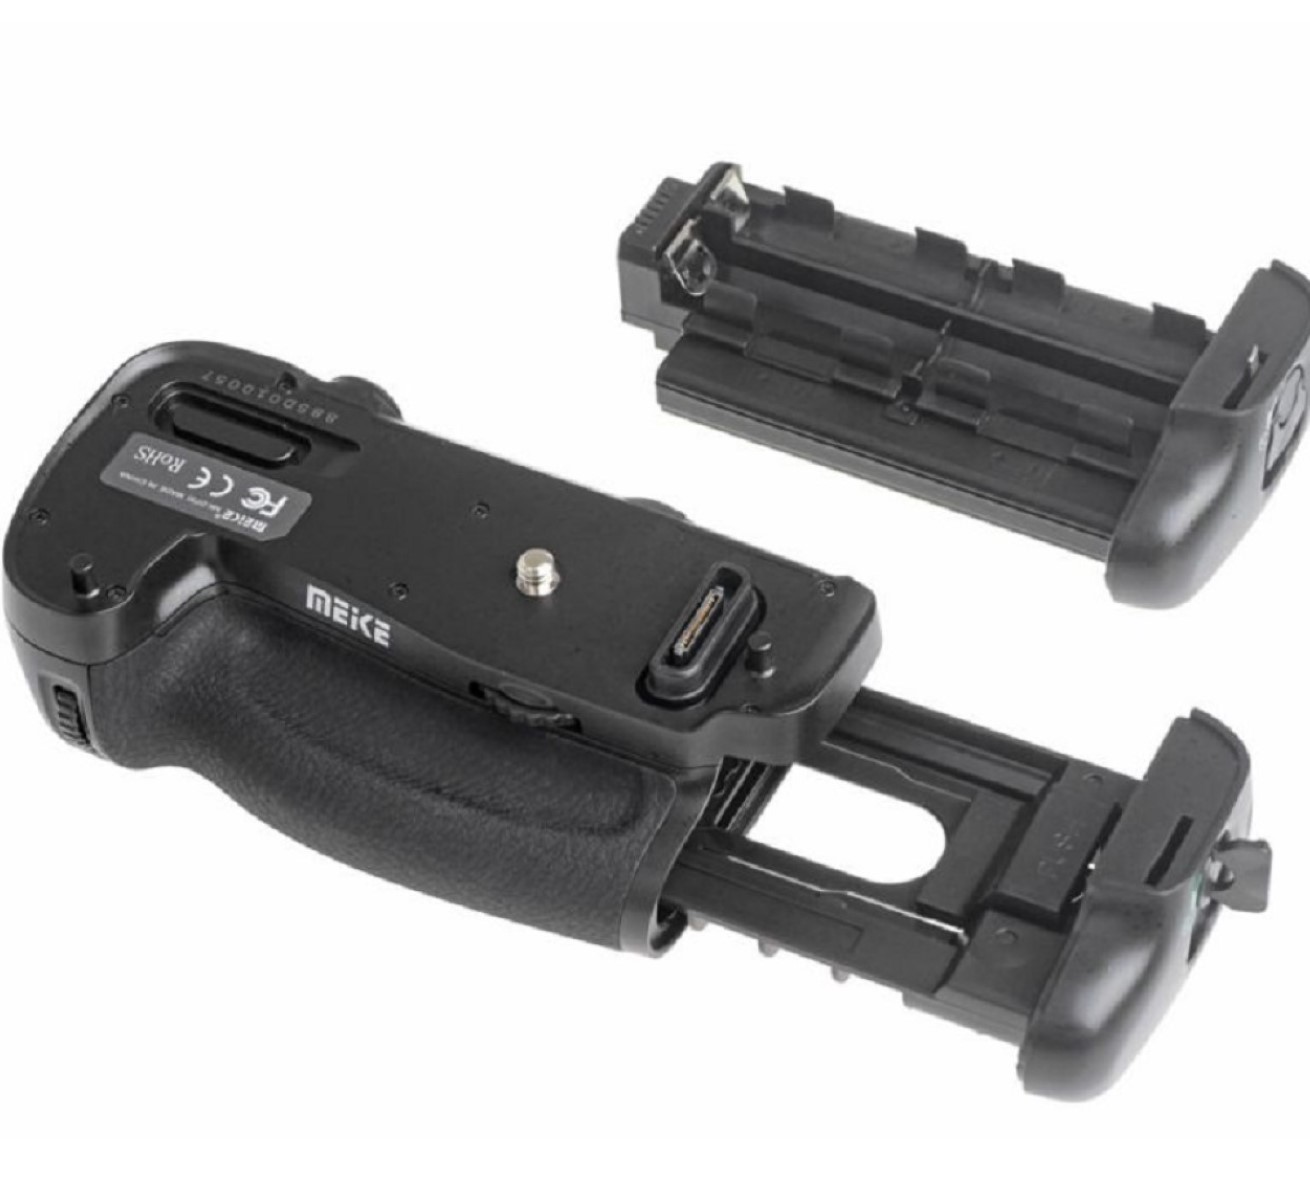 Meike Batteriegriff MK-DR750 mit Funk-Timer-Fernauslöser für Nikon D750 wie MB-D16